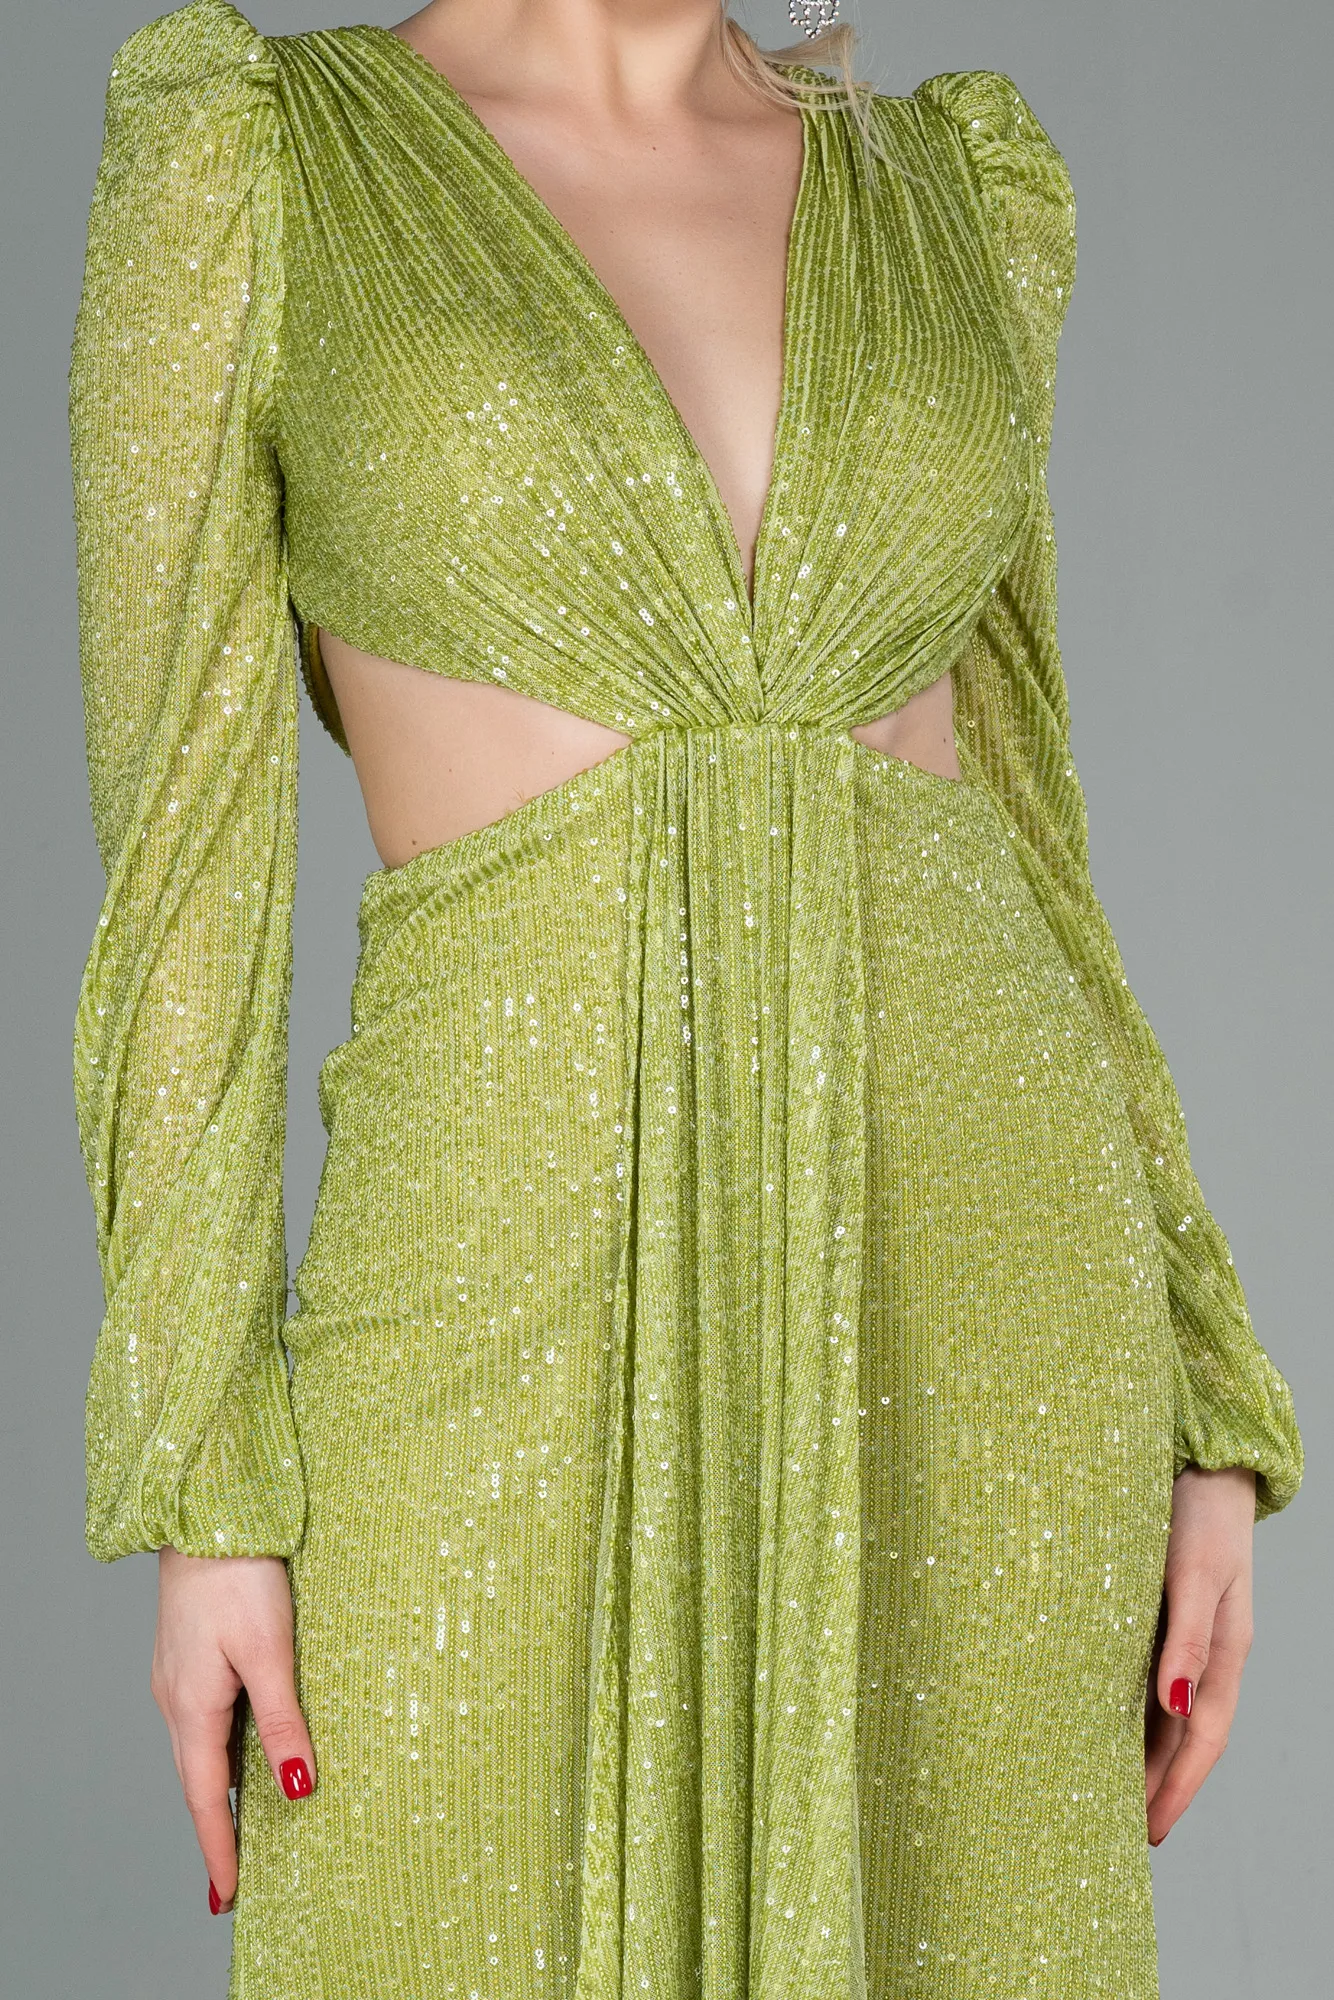 Pistachio Green-Long Scaly Evening Dress ABU2784